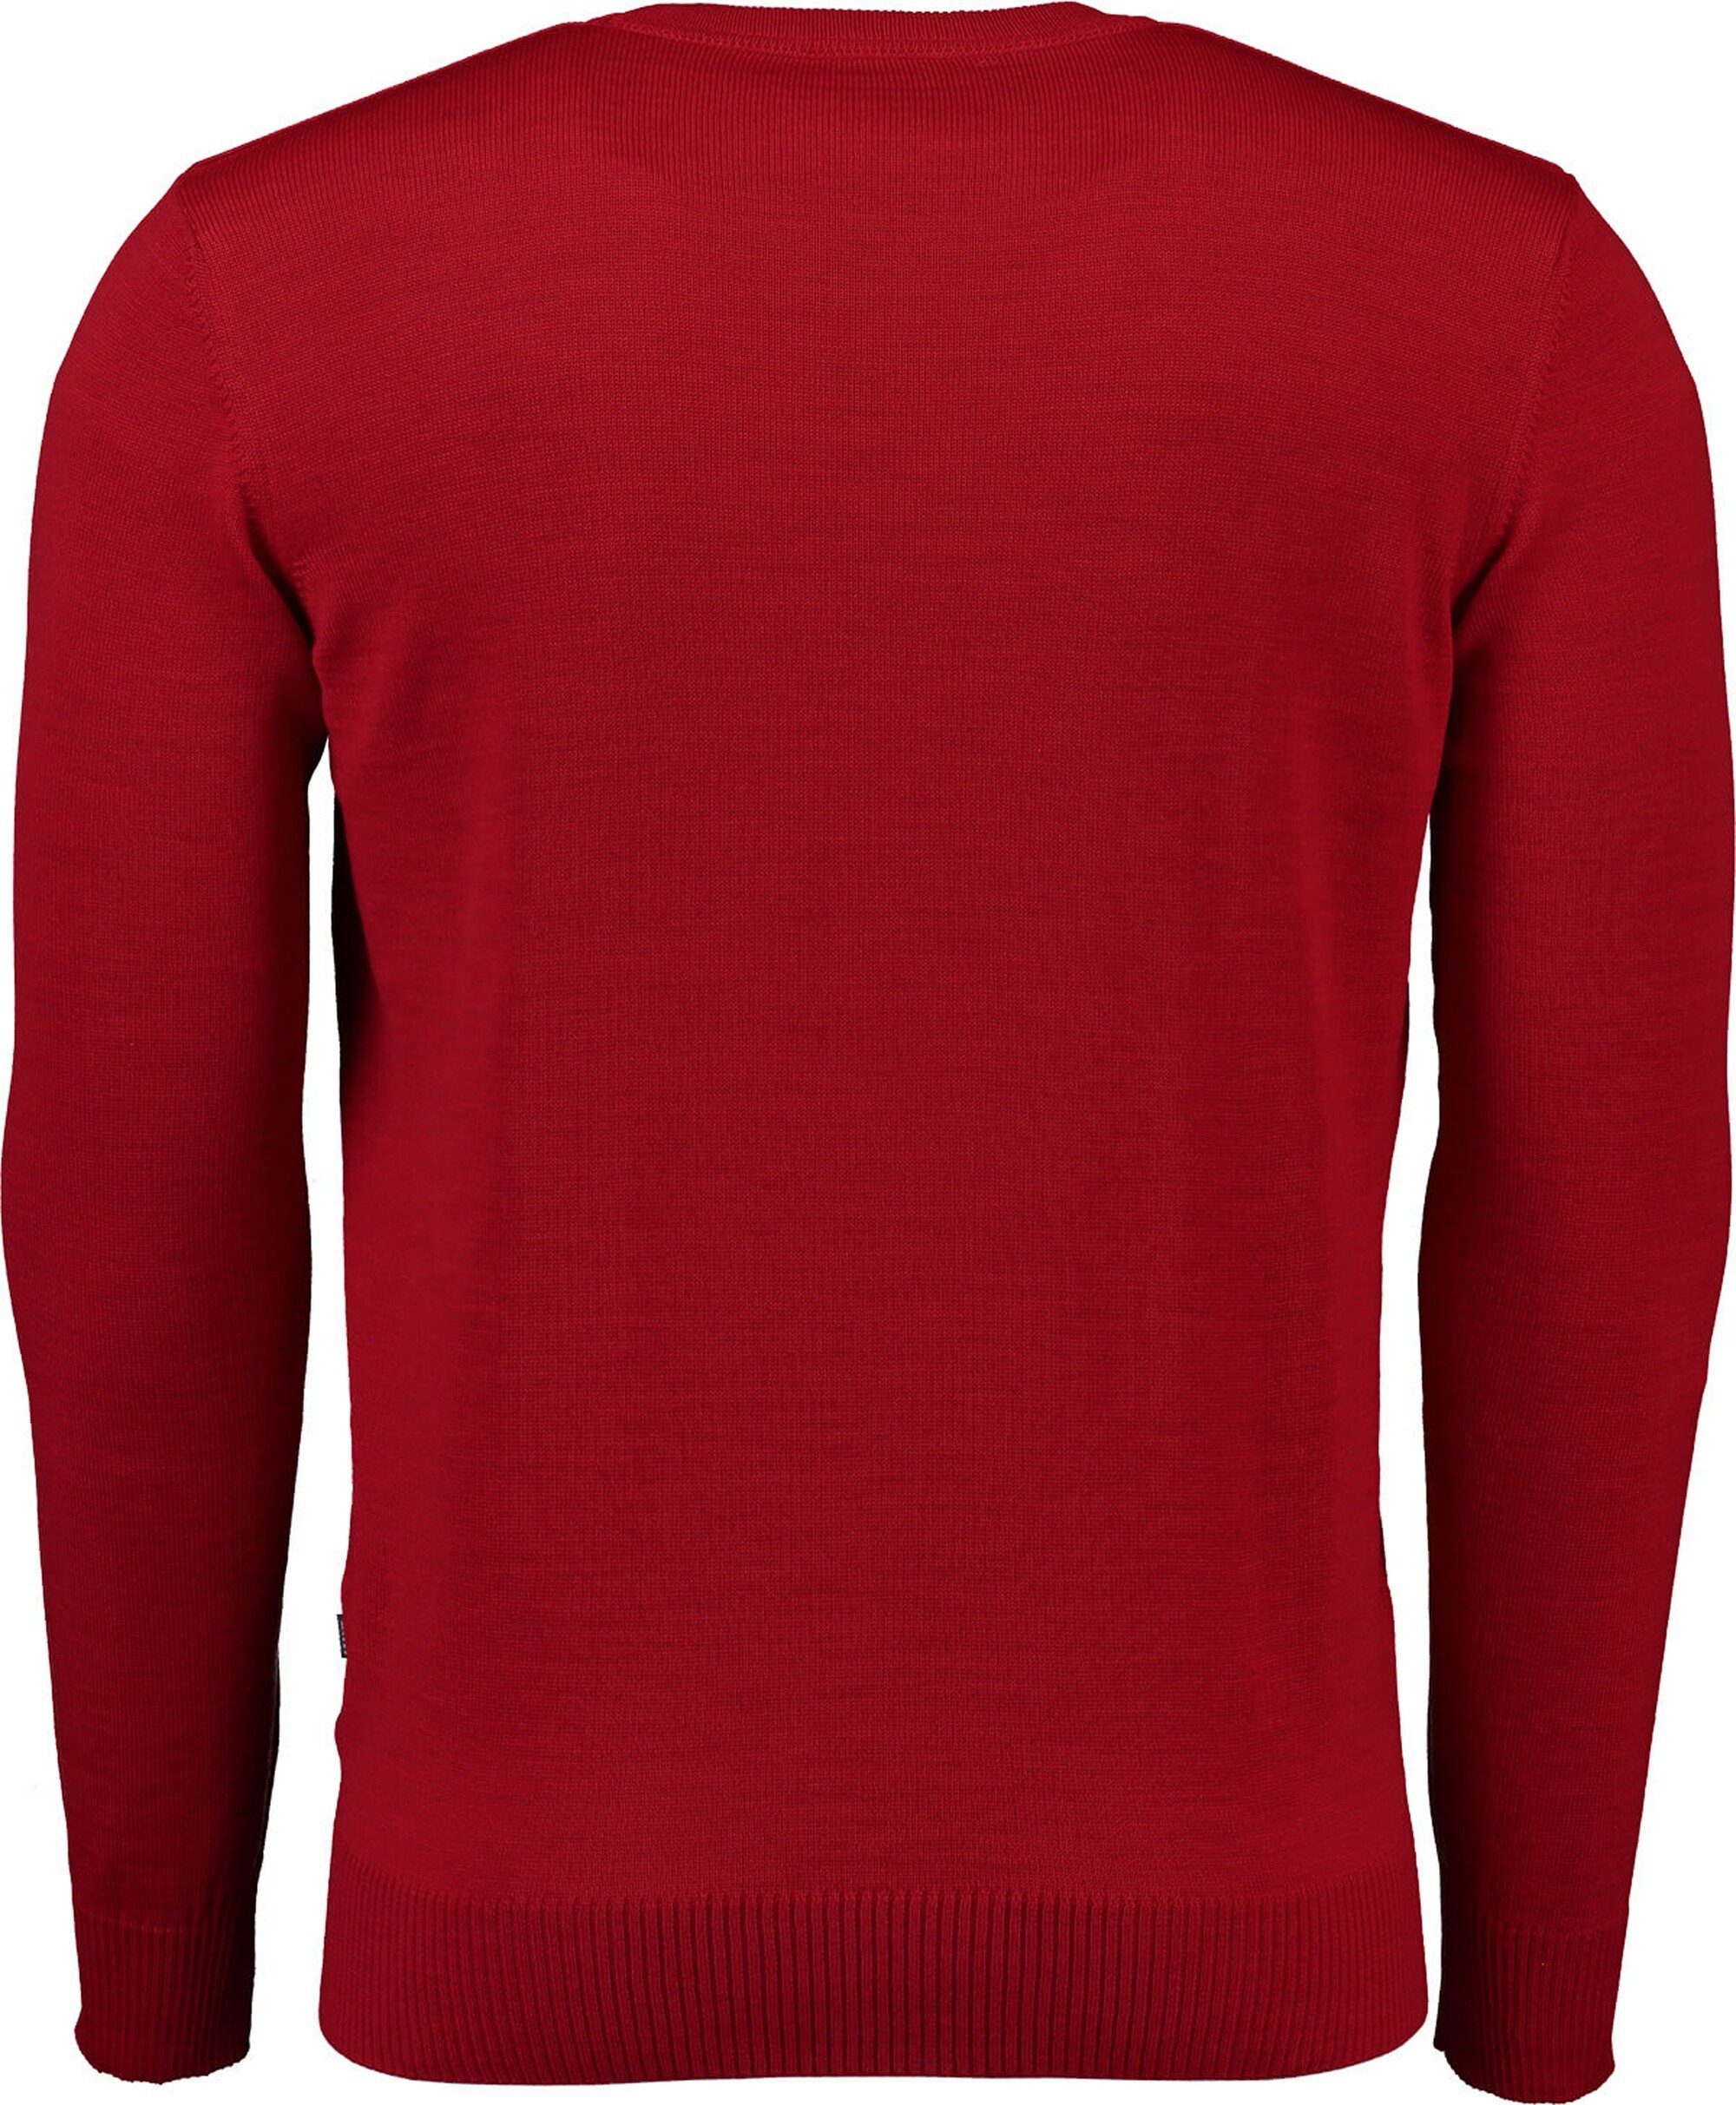 Top-Verkaufsteam MAERZ Muenchen V-Ausschnitt-Pullover MAERZ V-Ausschnitt Pullover aus rot Merinowolle